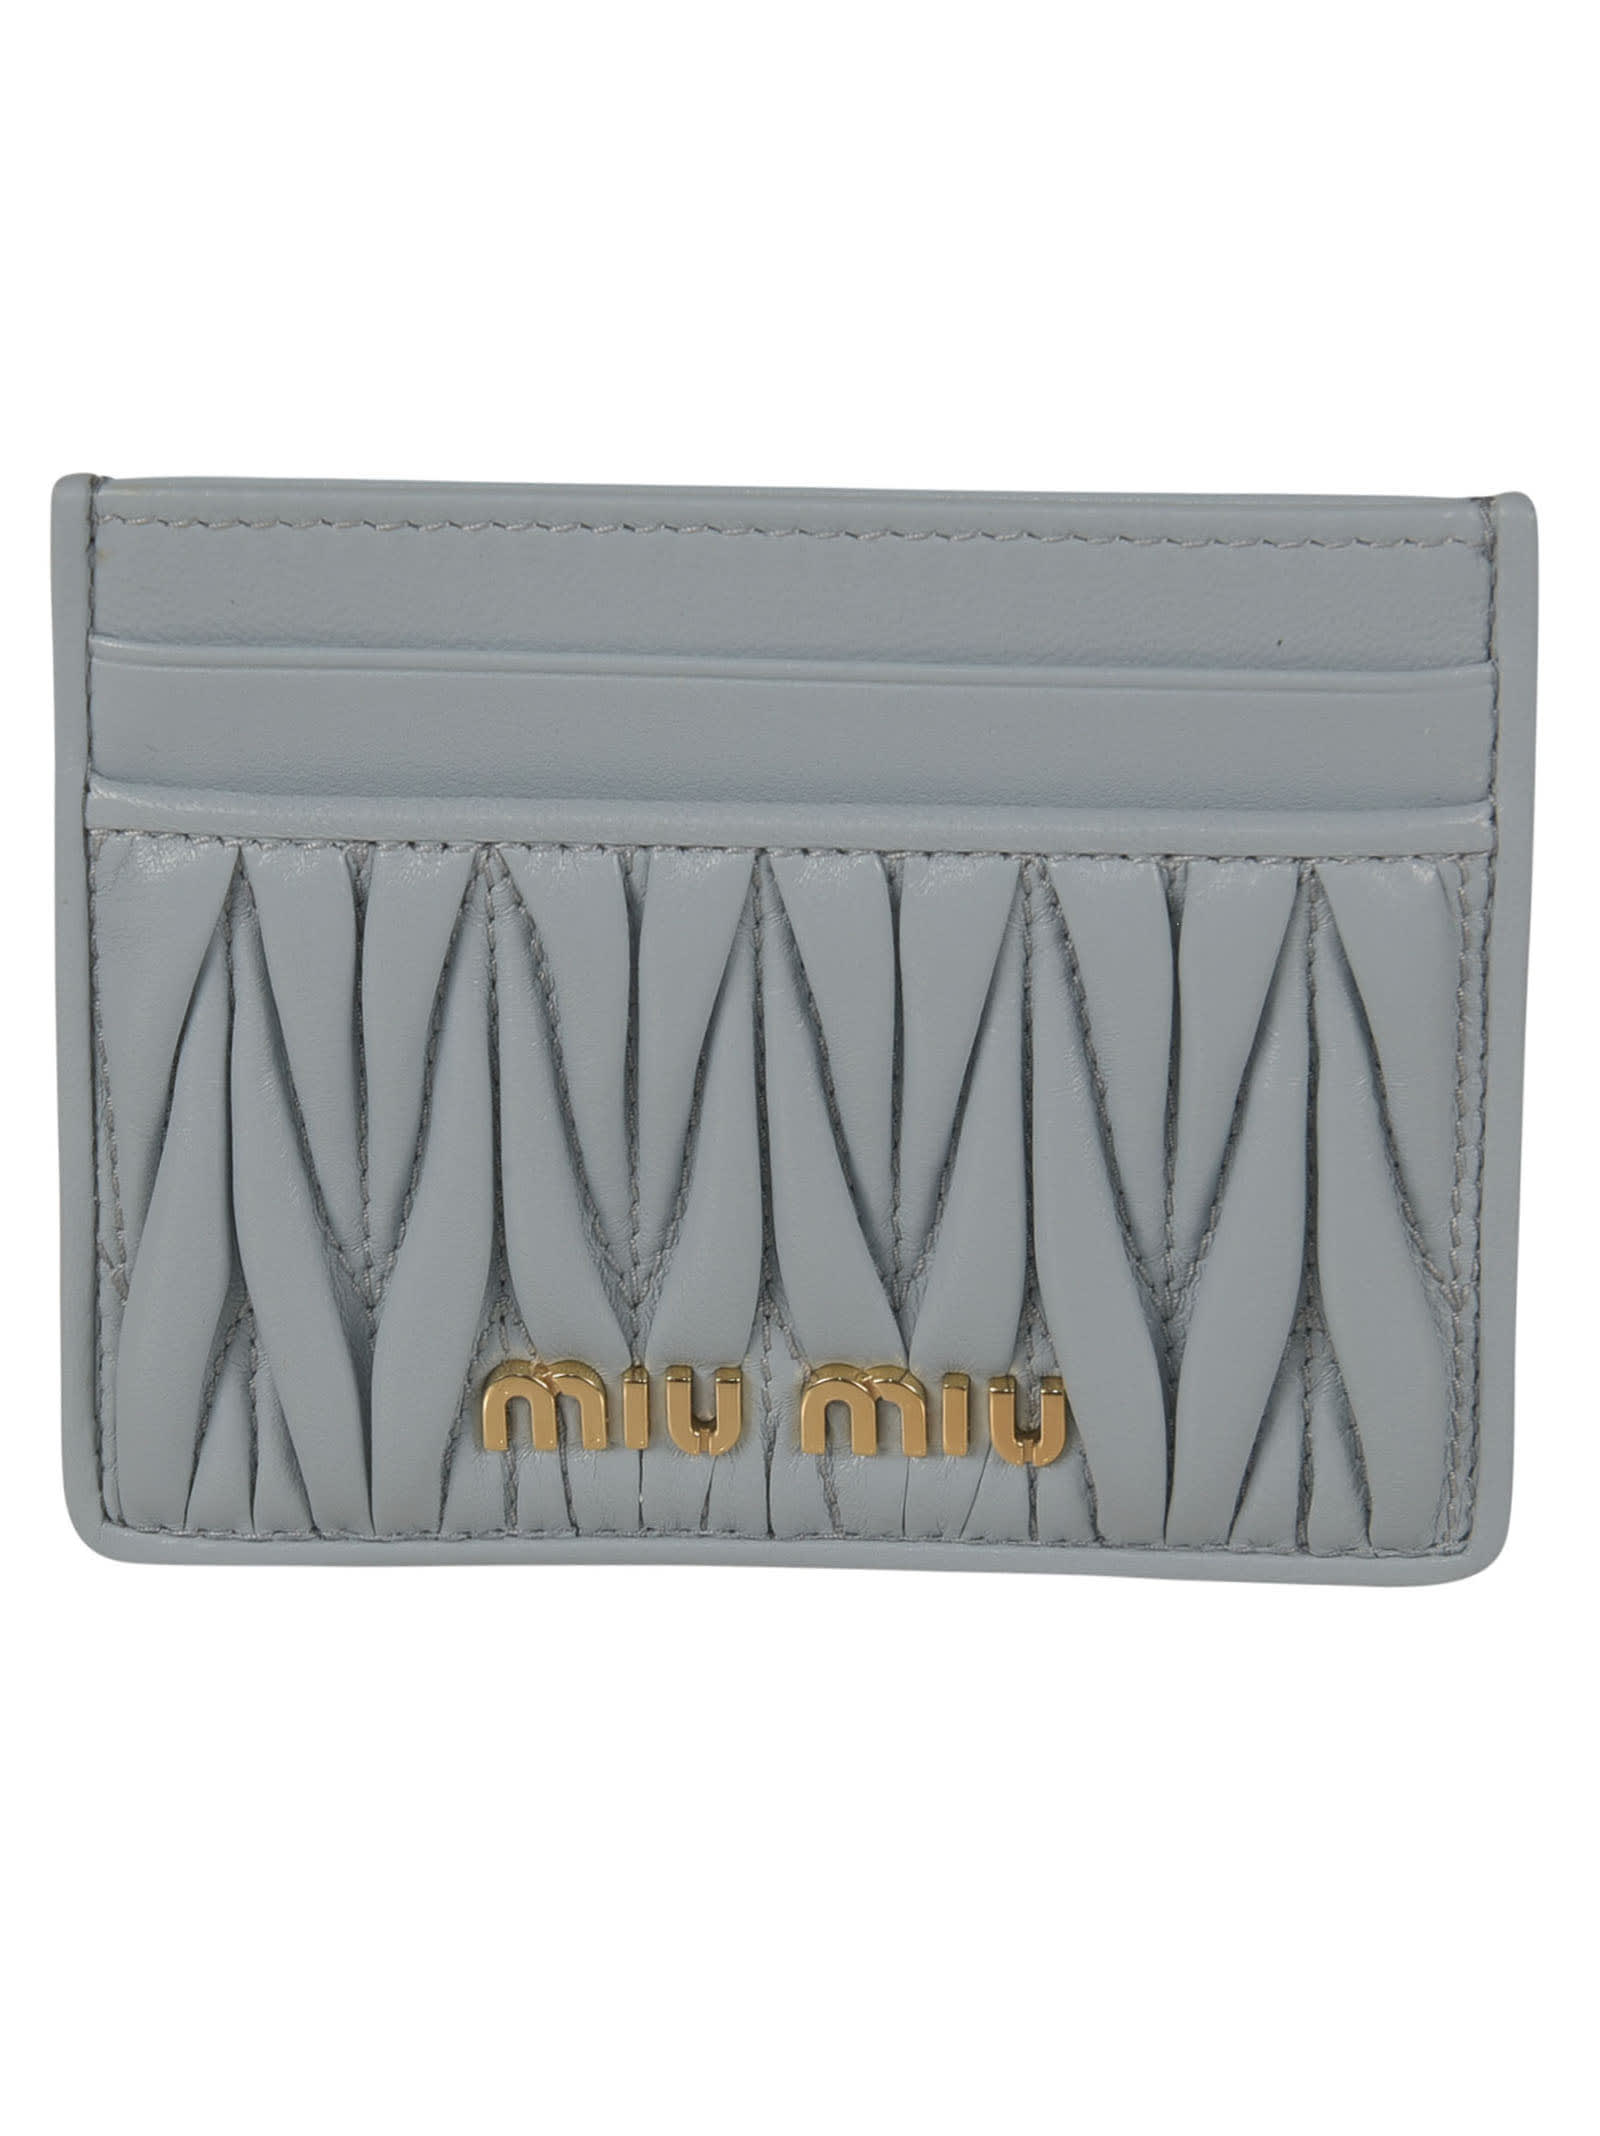 Miu Miu Metallic Logo Card Holder